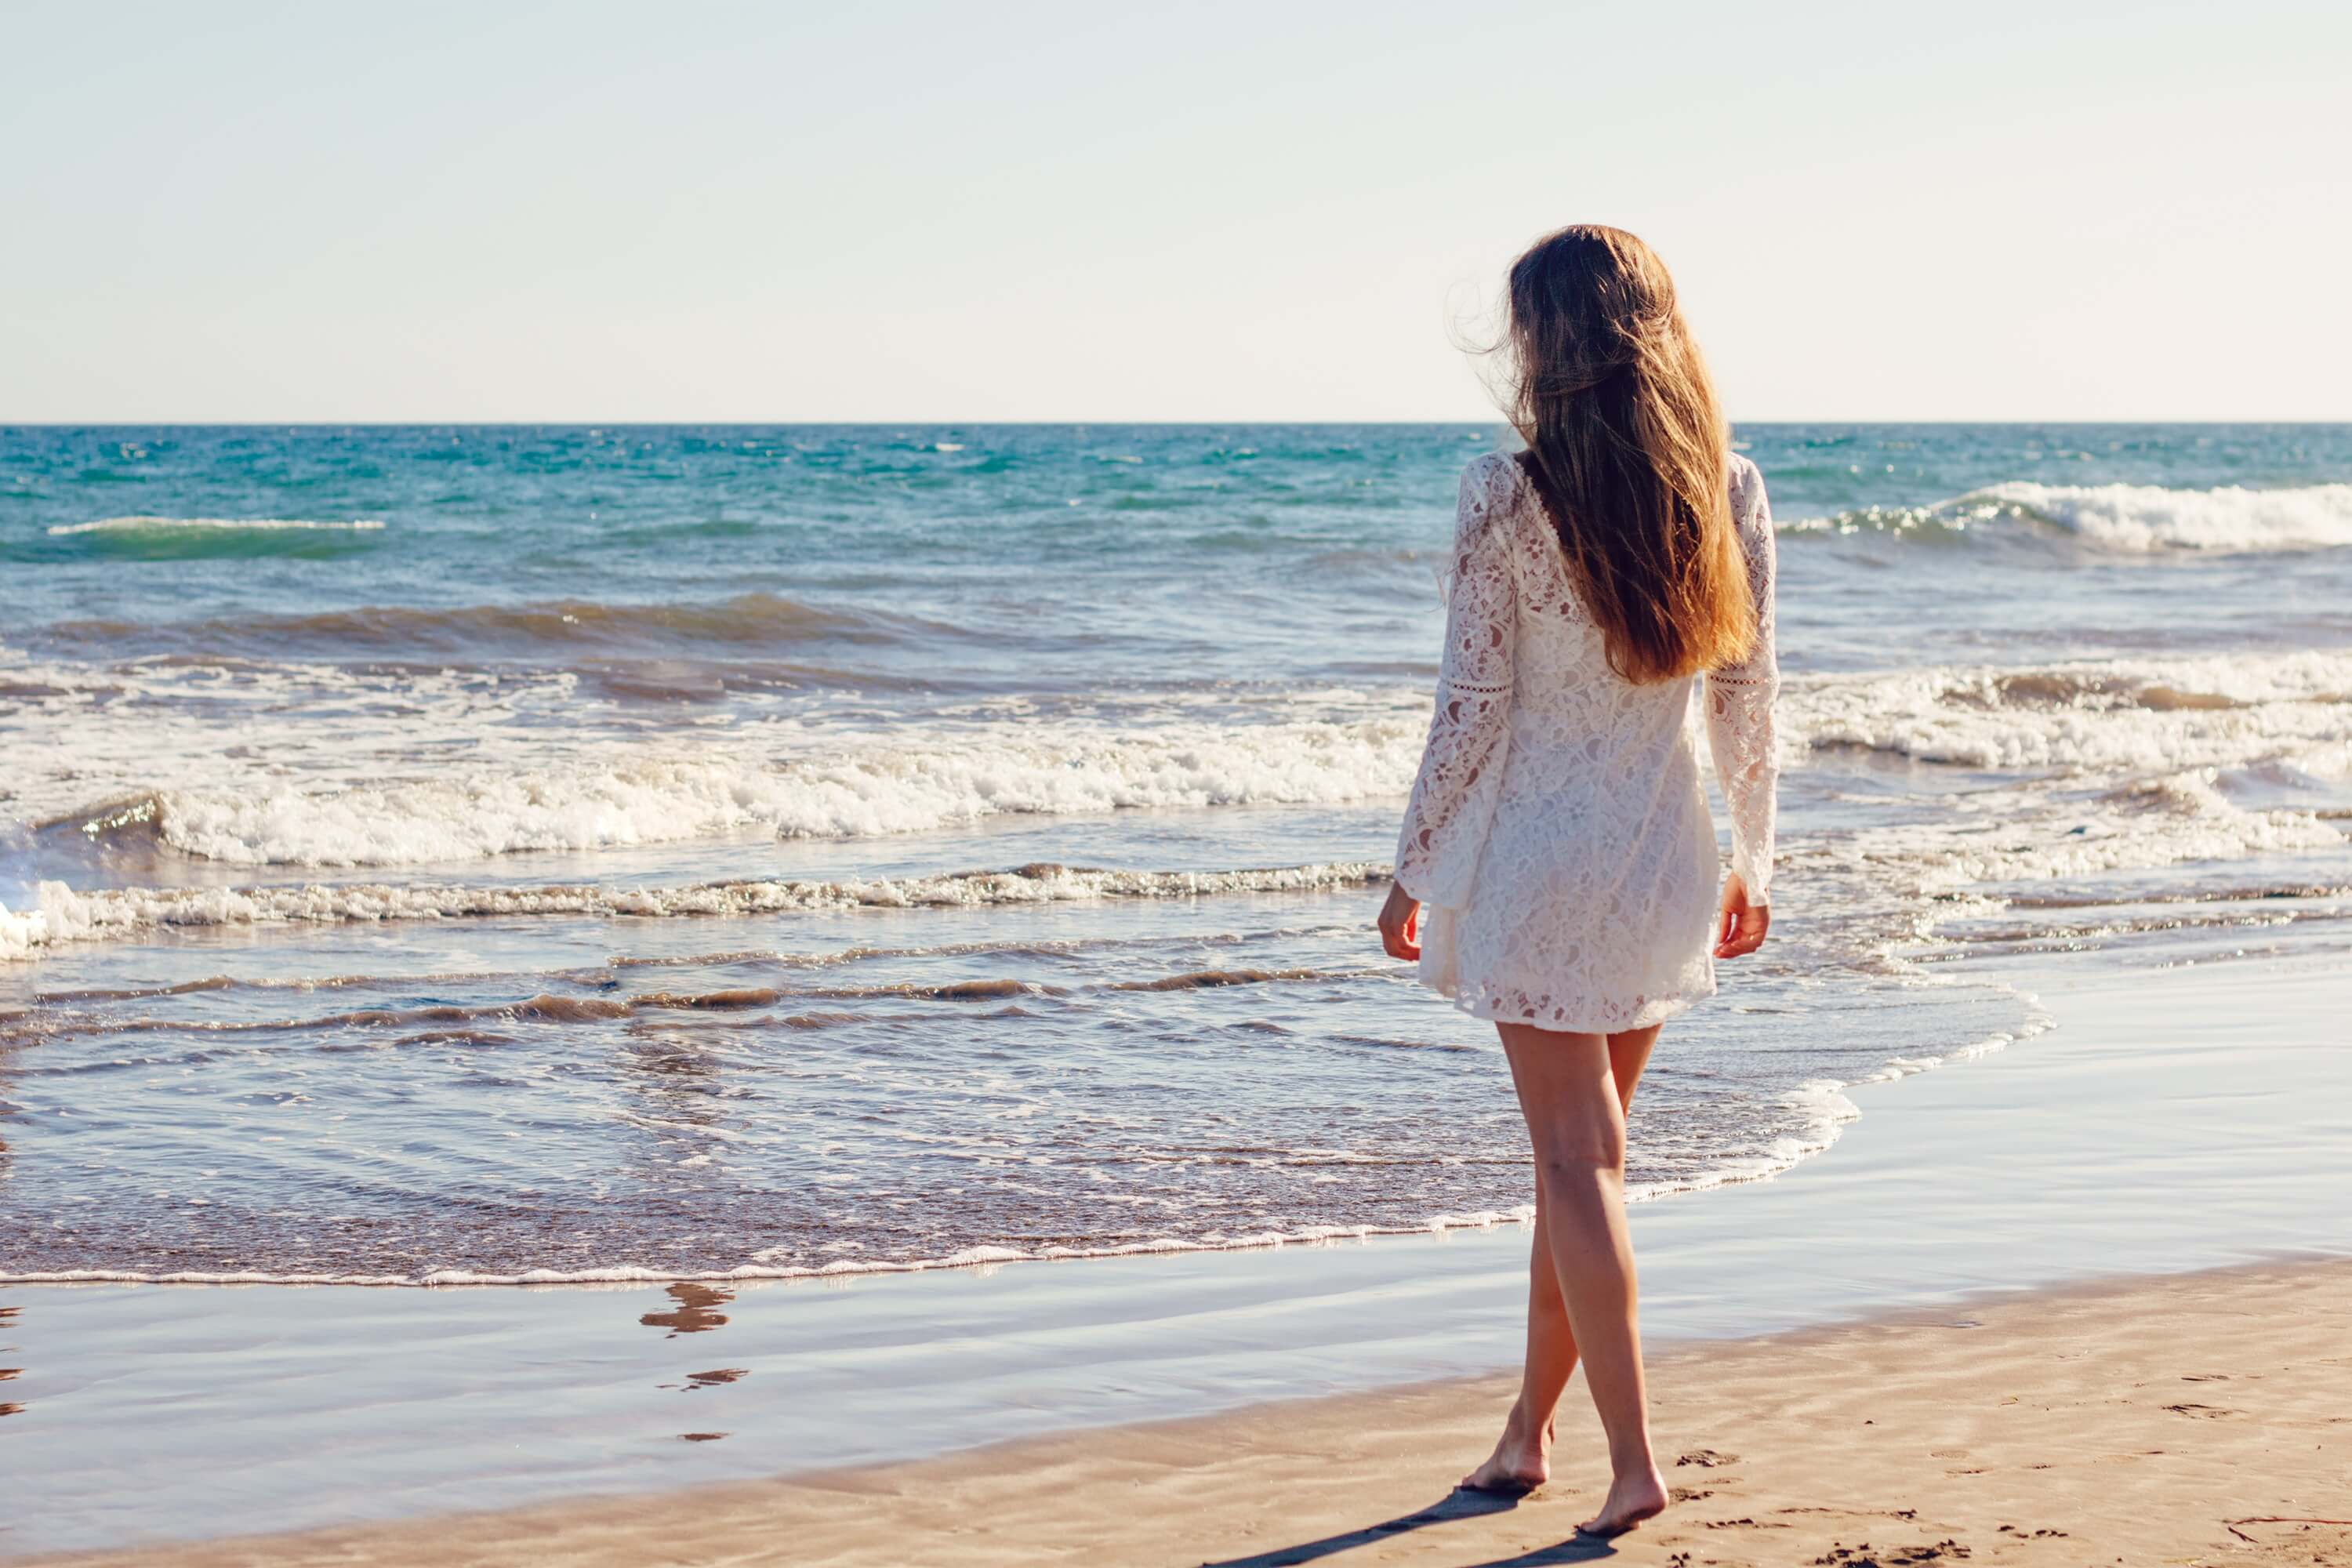 Фото девушки спиной на море. Девушка-море. Девушка на берегу моря. Фотосессия на море. Девушка на берегу моря спиной.